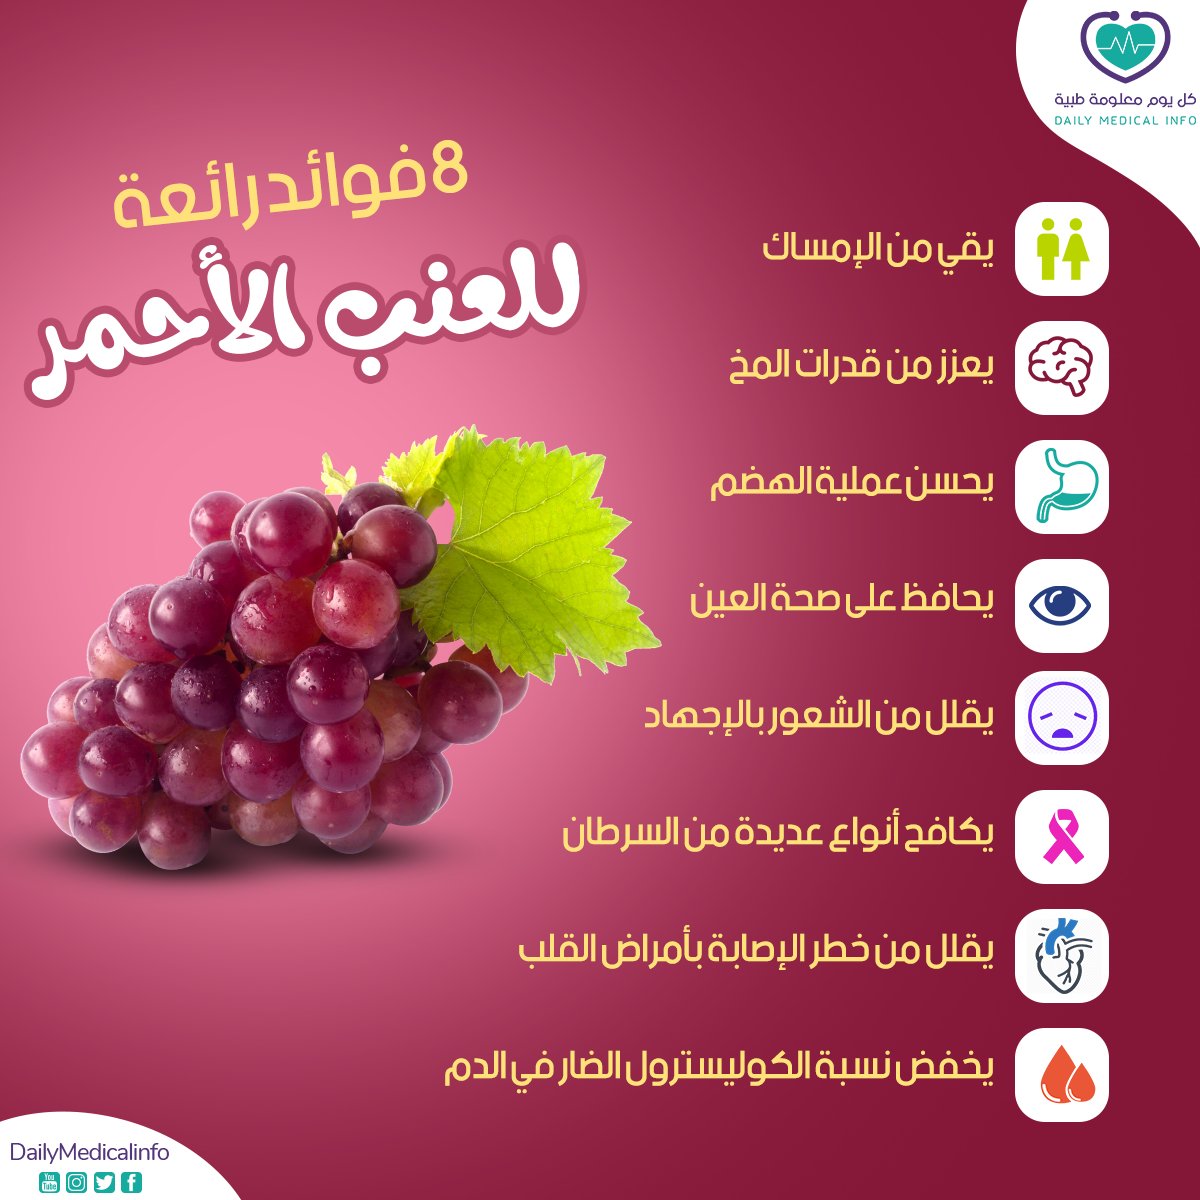 8 فوائد رائعة للعنب الأحمر